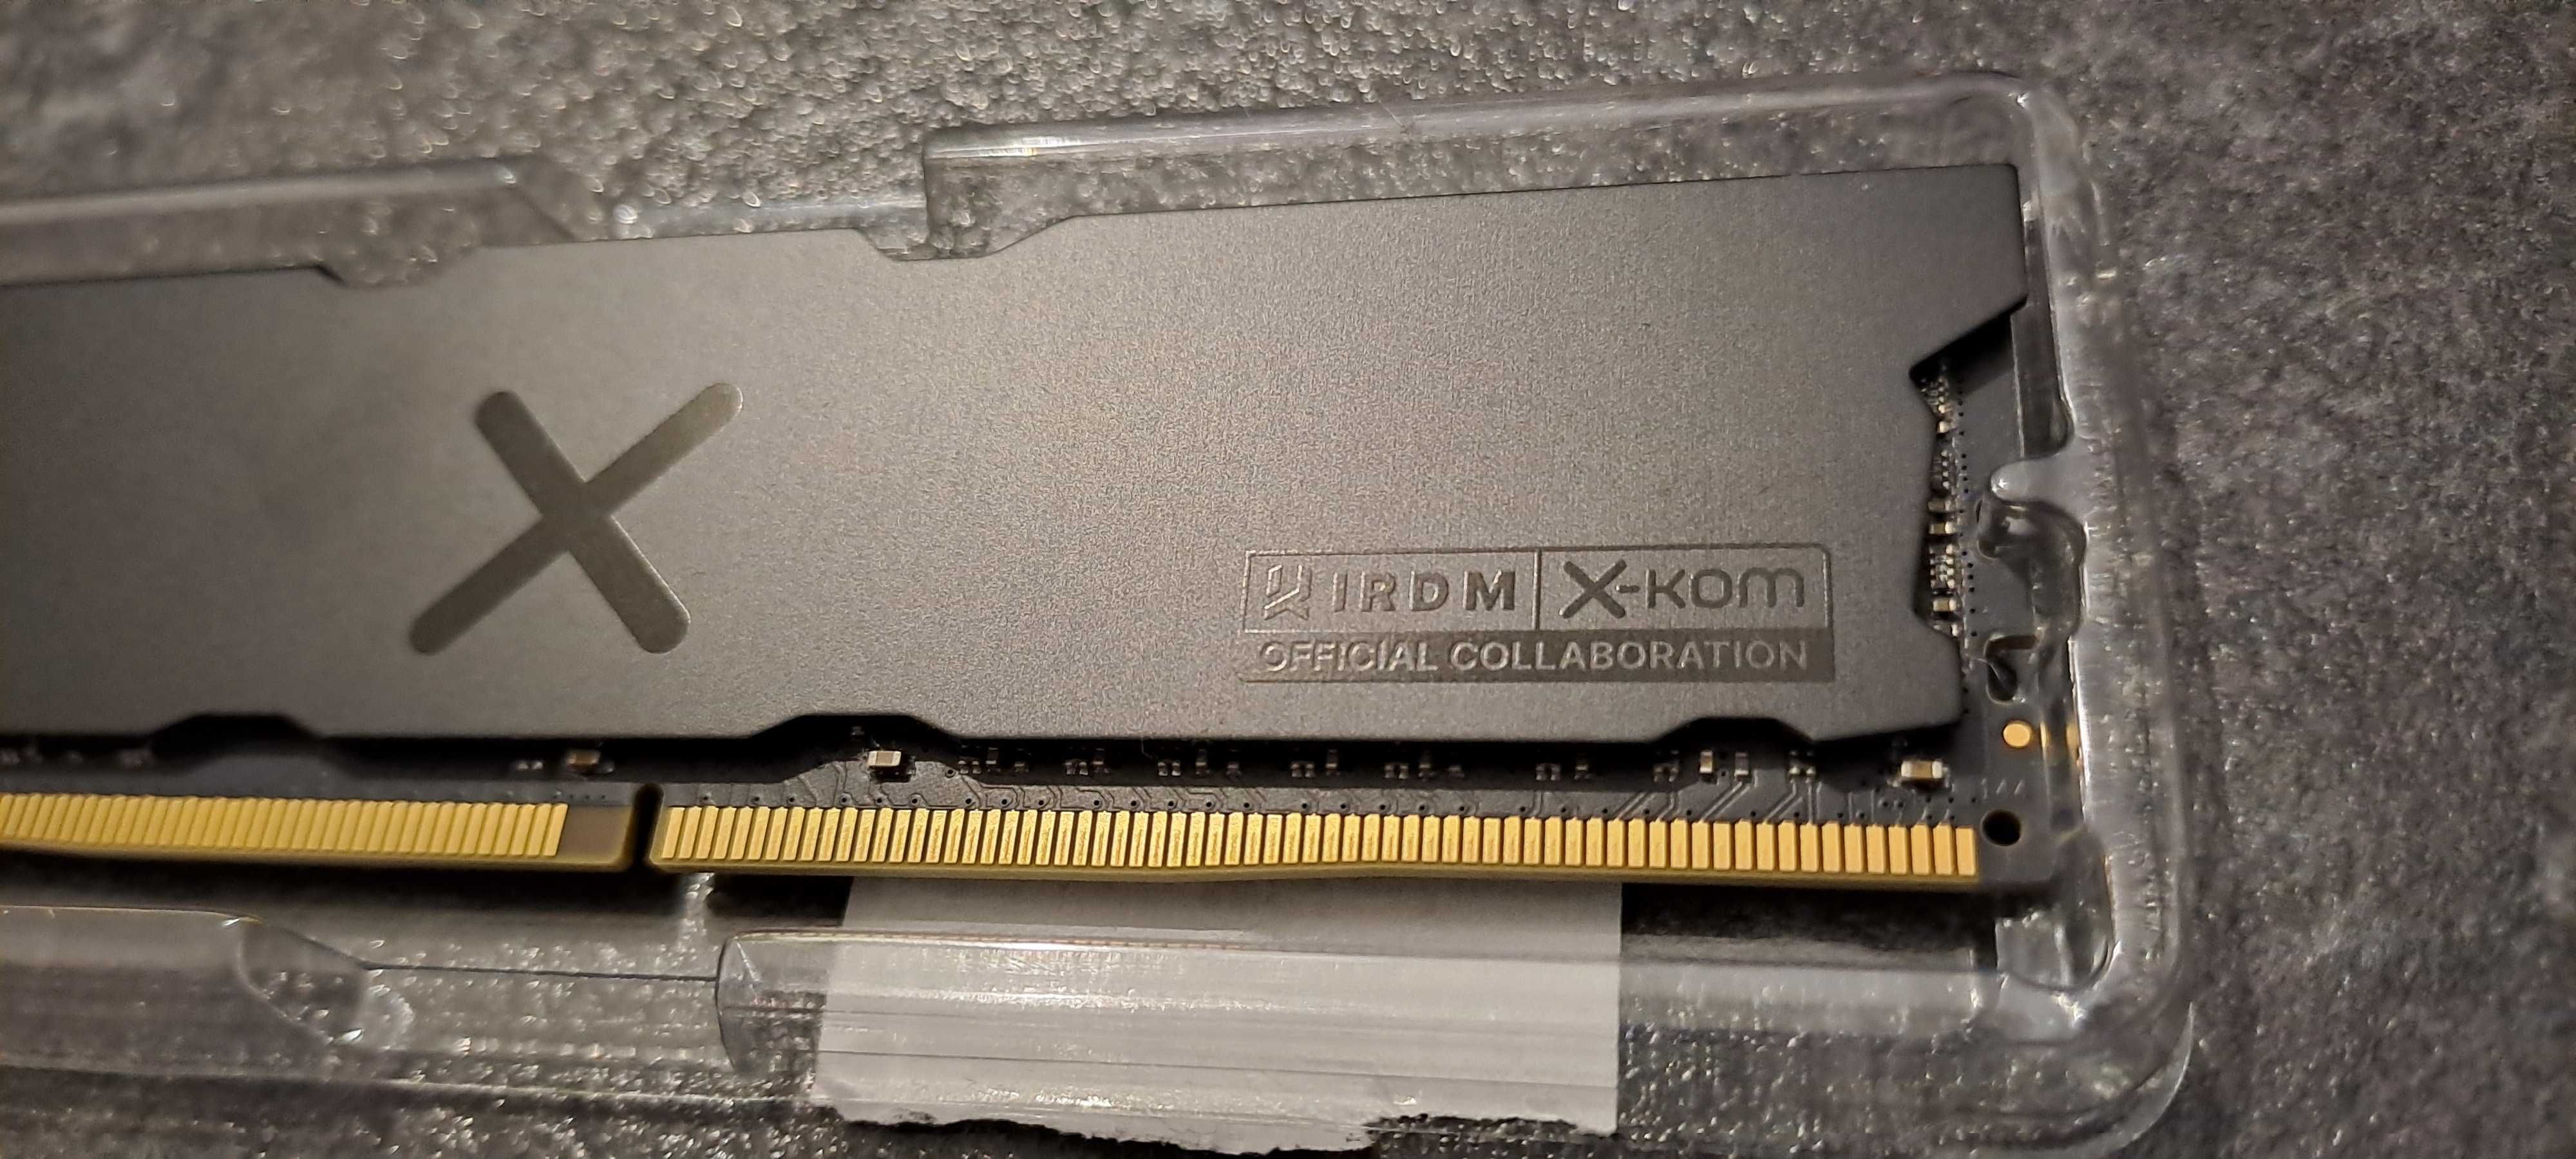 Pamięć kości RAM DDR4 16GB (2x8GB) - idealne dla gracza jak nowe !